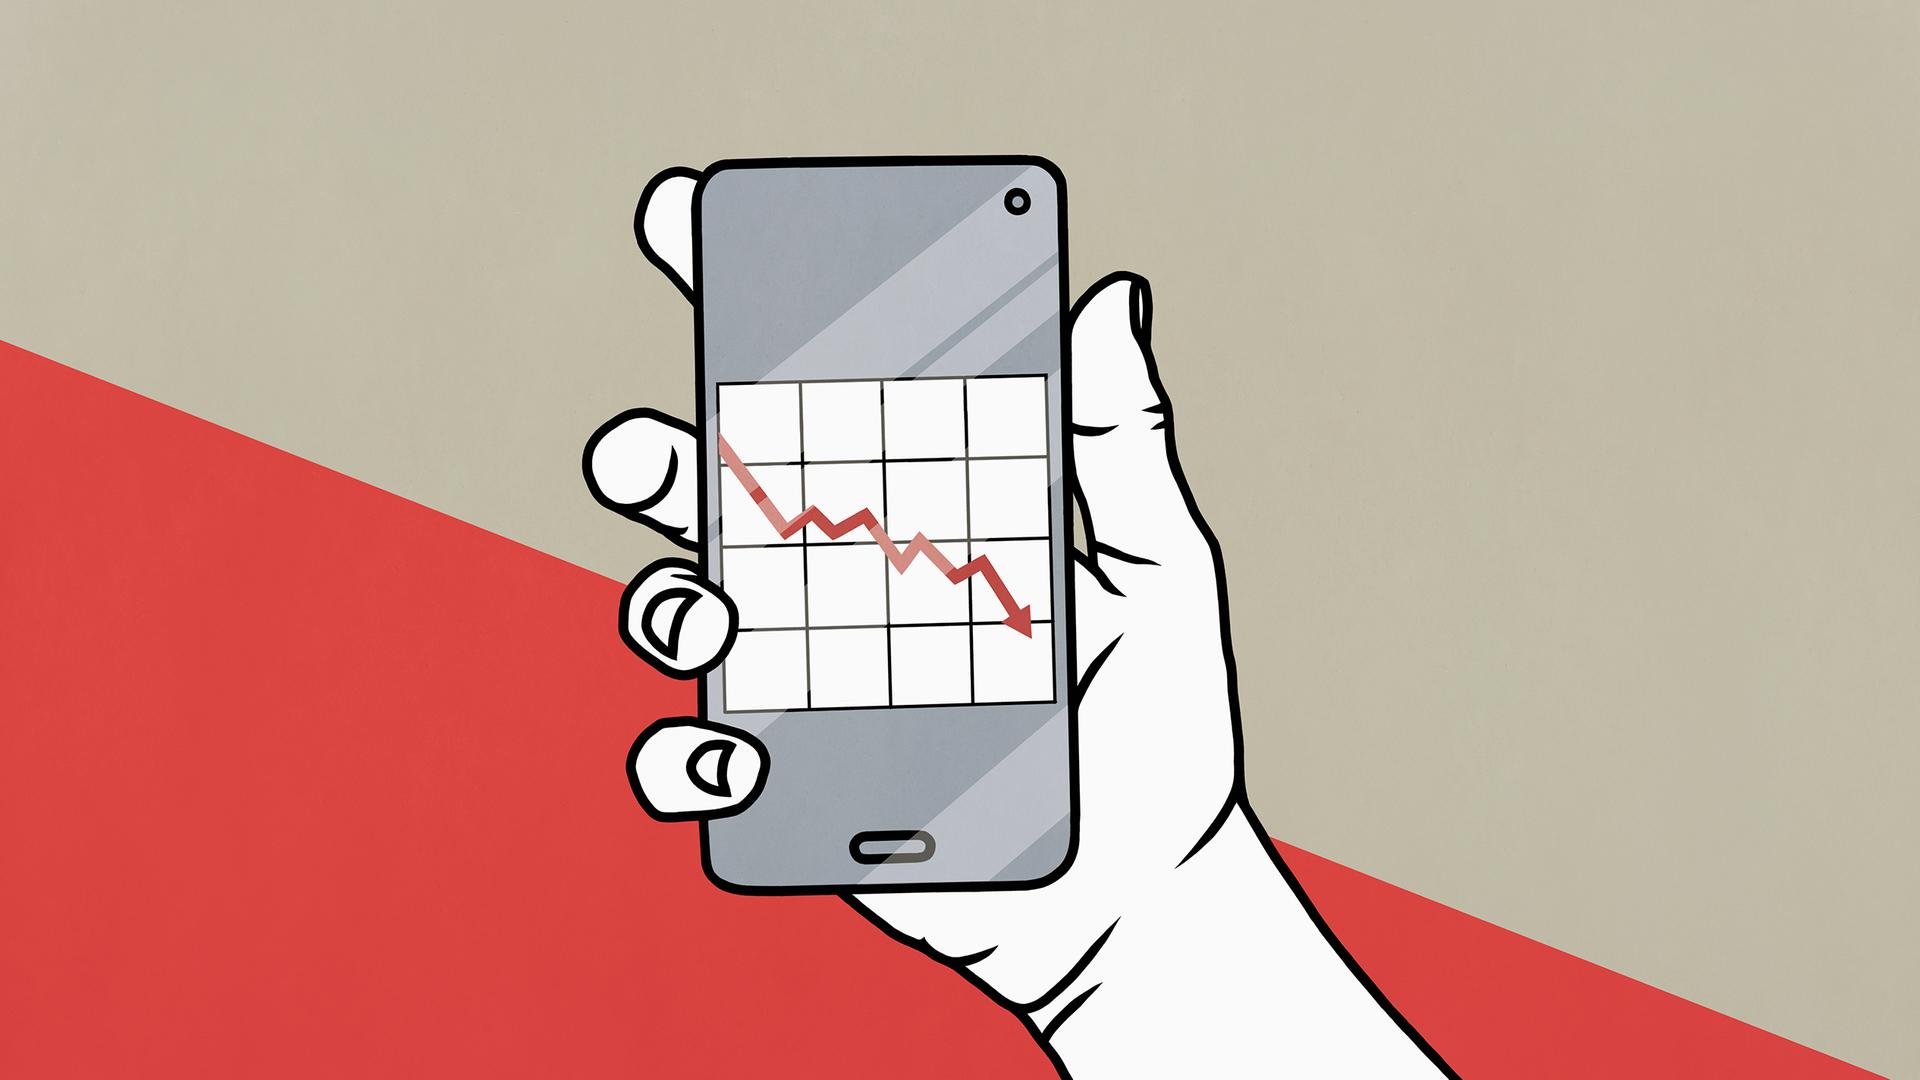 Illustration einer Hand mit einem Smartphone, auf dem Bildschirm ist ein abwärts gerichteter Kurspfeil zu sehen.